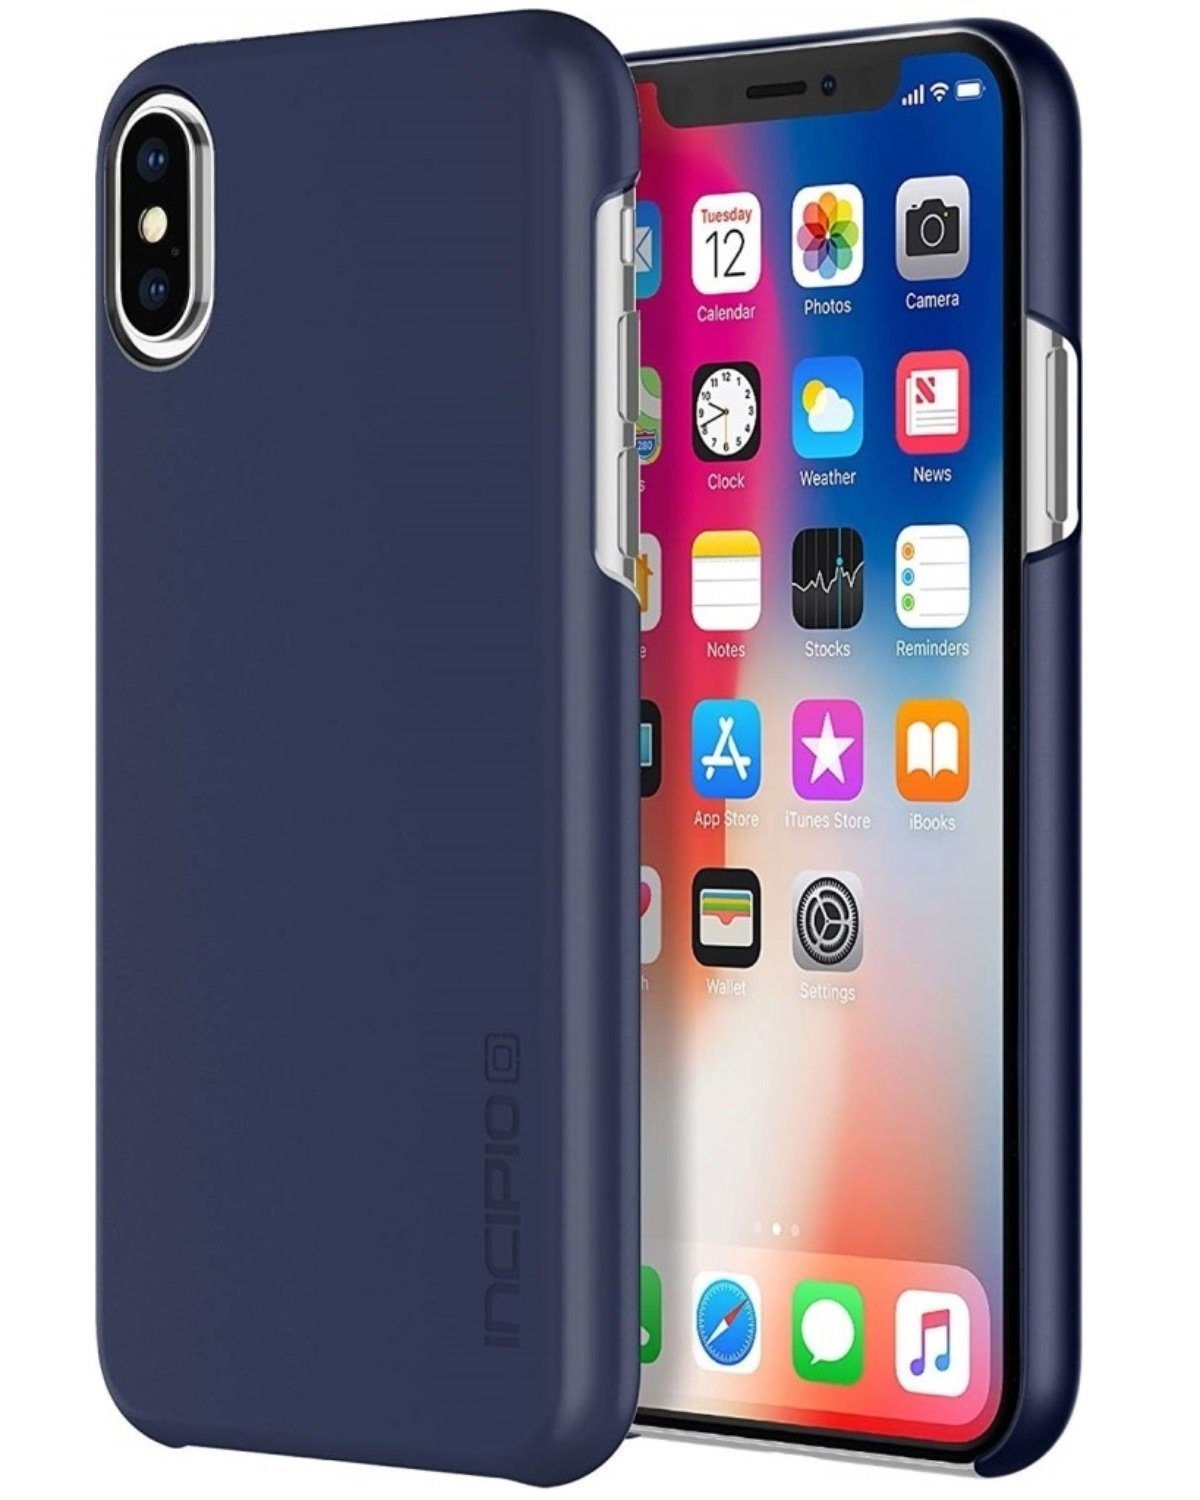 Incipio Handyhülle NGP Cover Blau Hard-Case Schutz-Hülle Tasche, passend für Apple iPhone X/ Xs Wireless Charging kompatibel Ultra-Slim